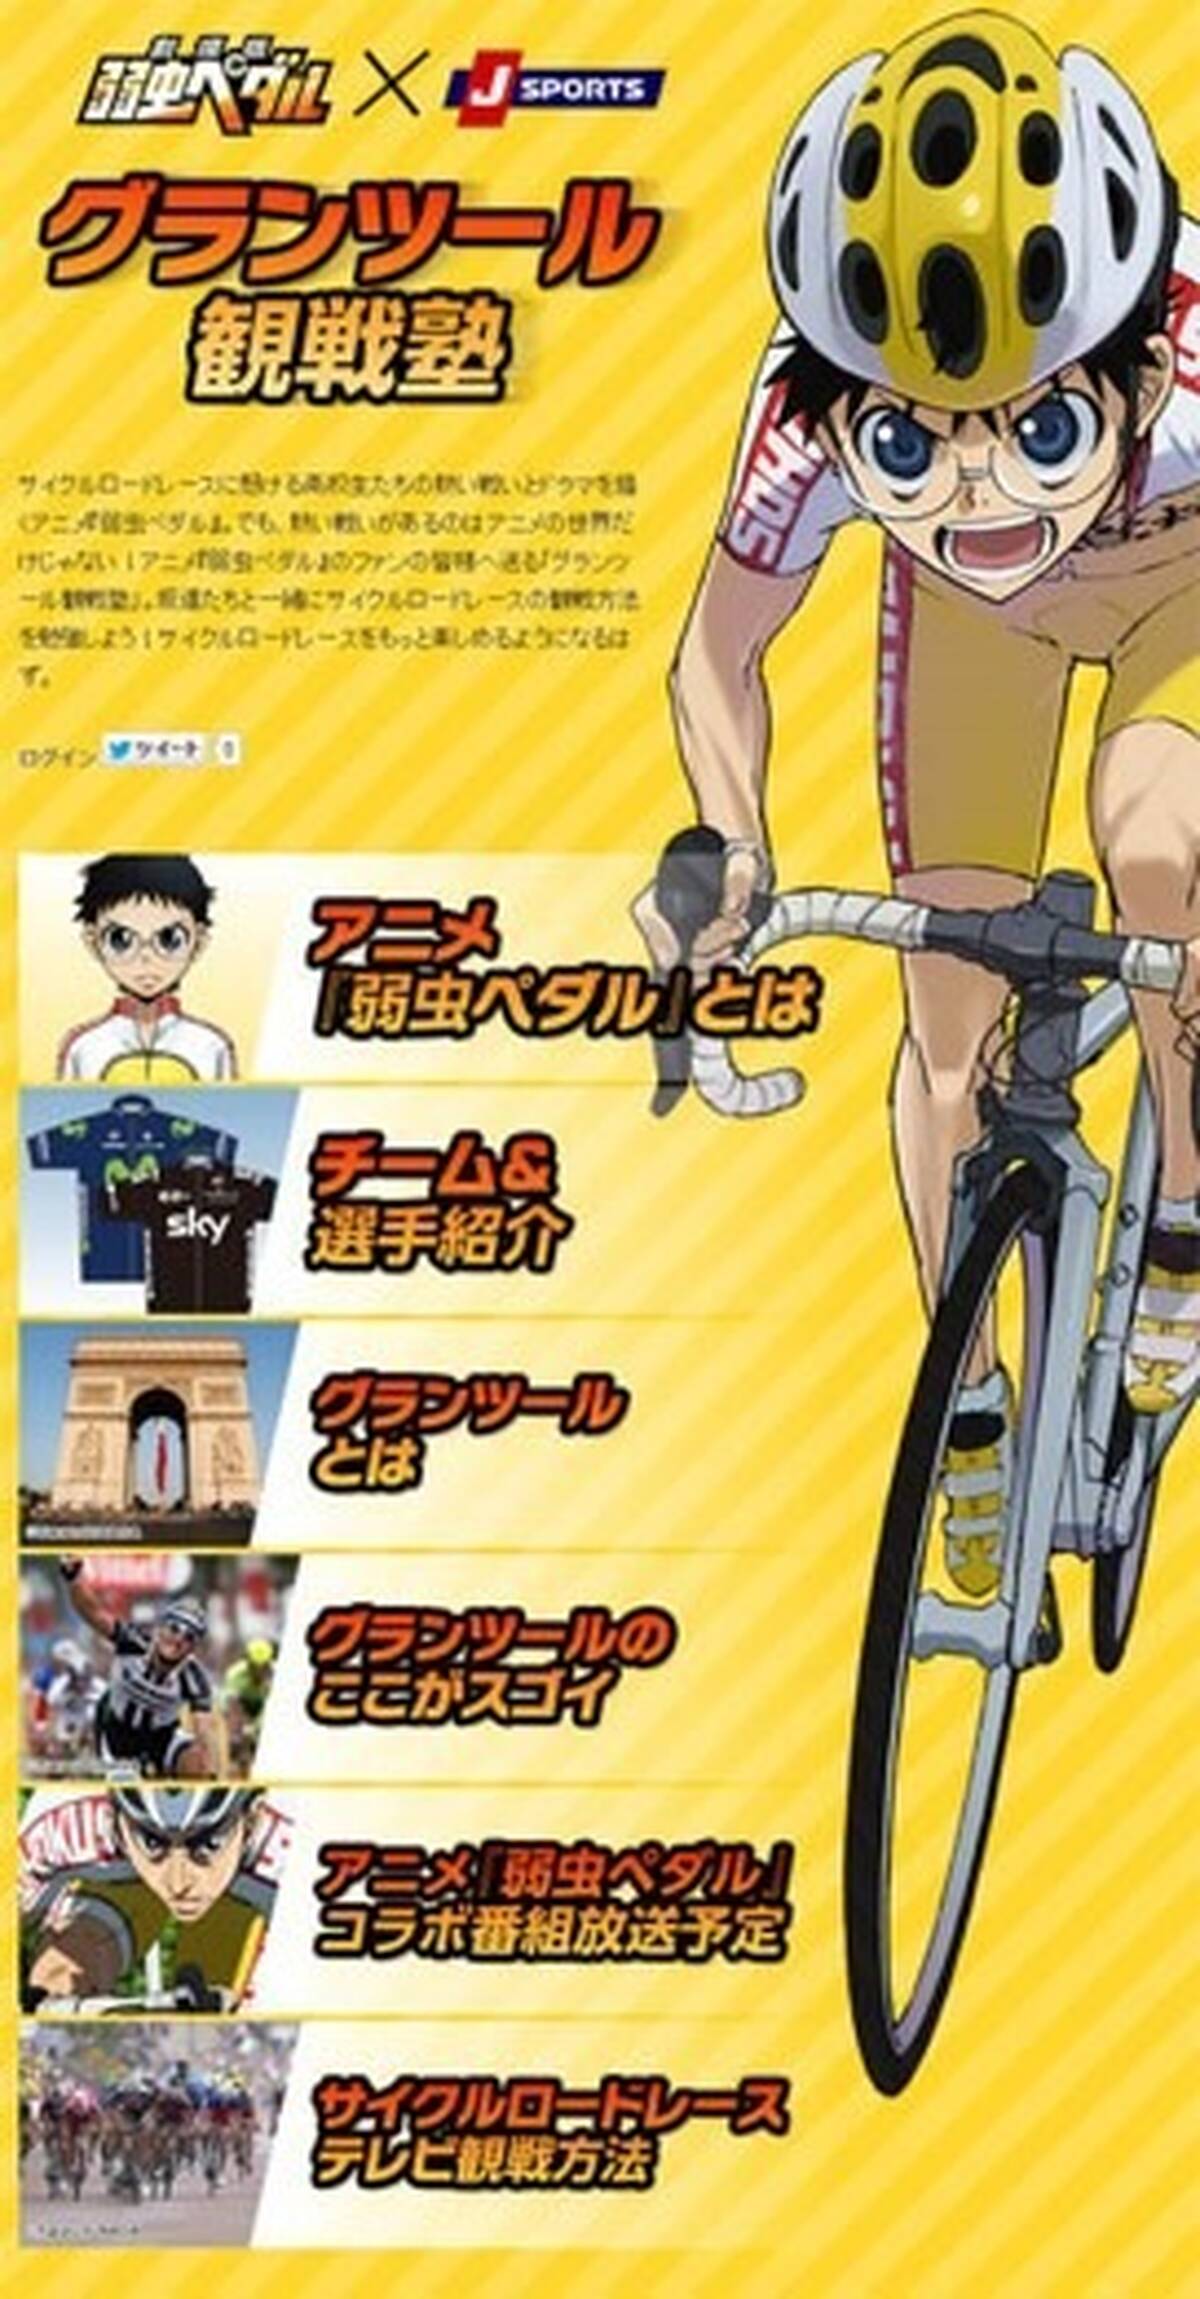 劇場版 弱虫ペダル スポーツ専門チャンネル J Sports とコラボ 実際の自転車レースやチームをアニメにオーバーラップさせて紹介 アキバ総研